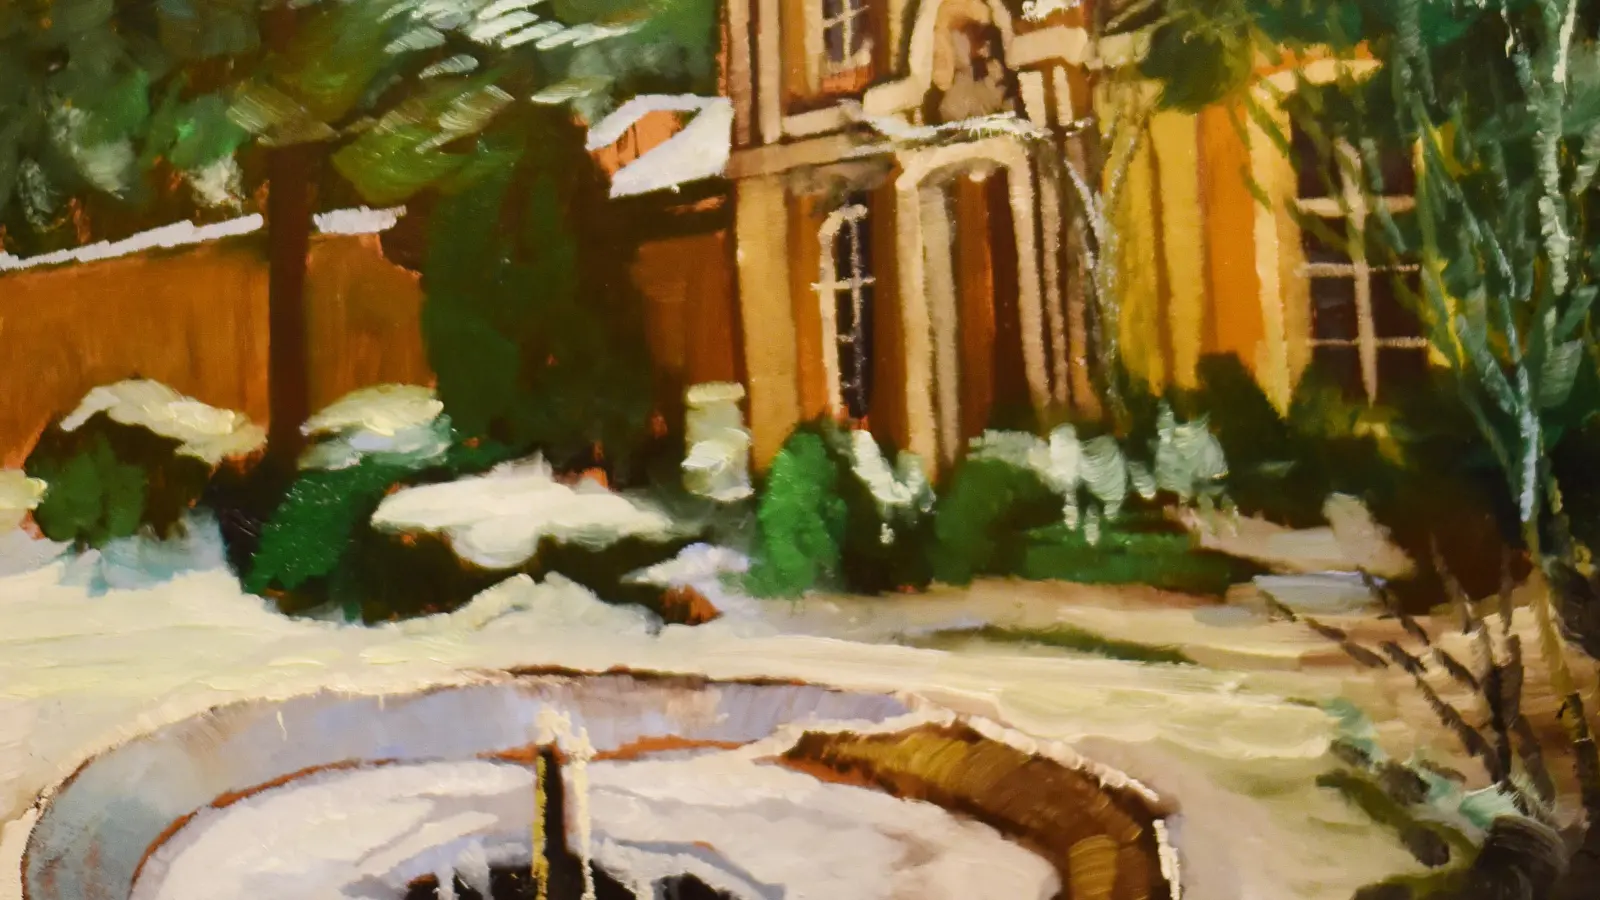 Schnee liegt auf den Zweigen und im Garten: Das Prinzenschlösschen gehörte zu den Lieblingsmotiven des Künstlers Gottfried Scheer, der ab 1919 in Ansbach wohnte. (Foto: Jim Albright)